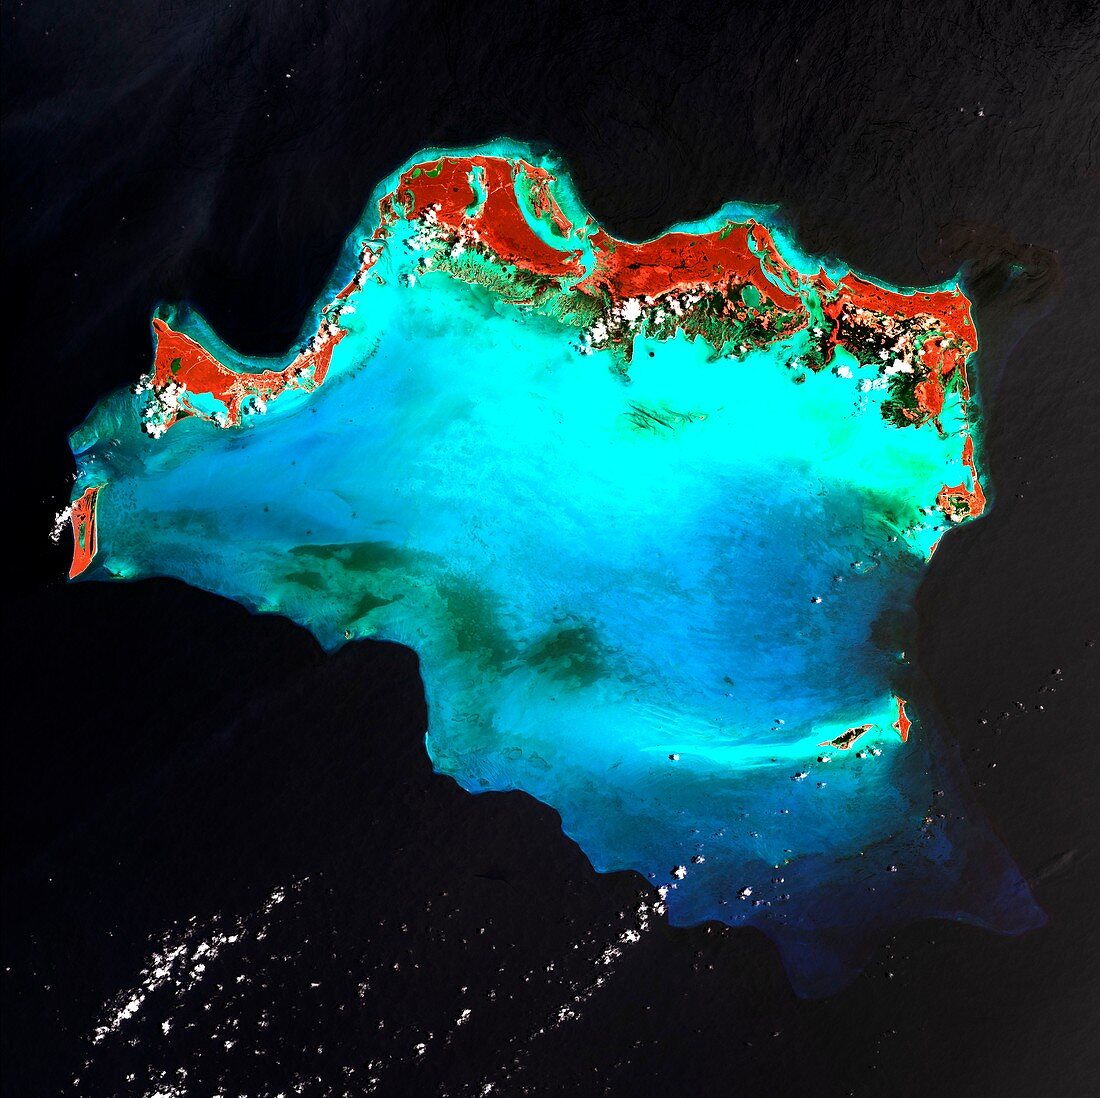 Caicos Islands, satellite image